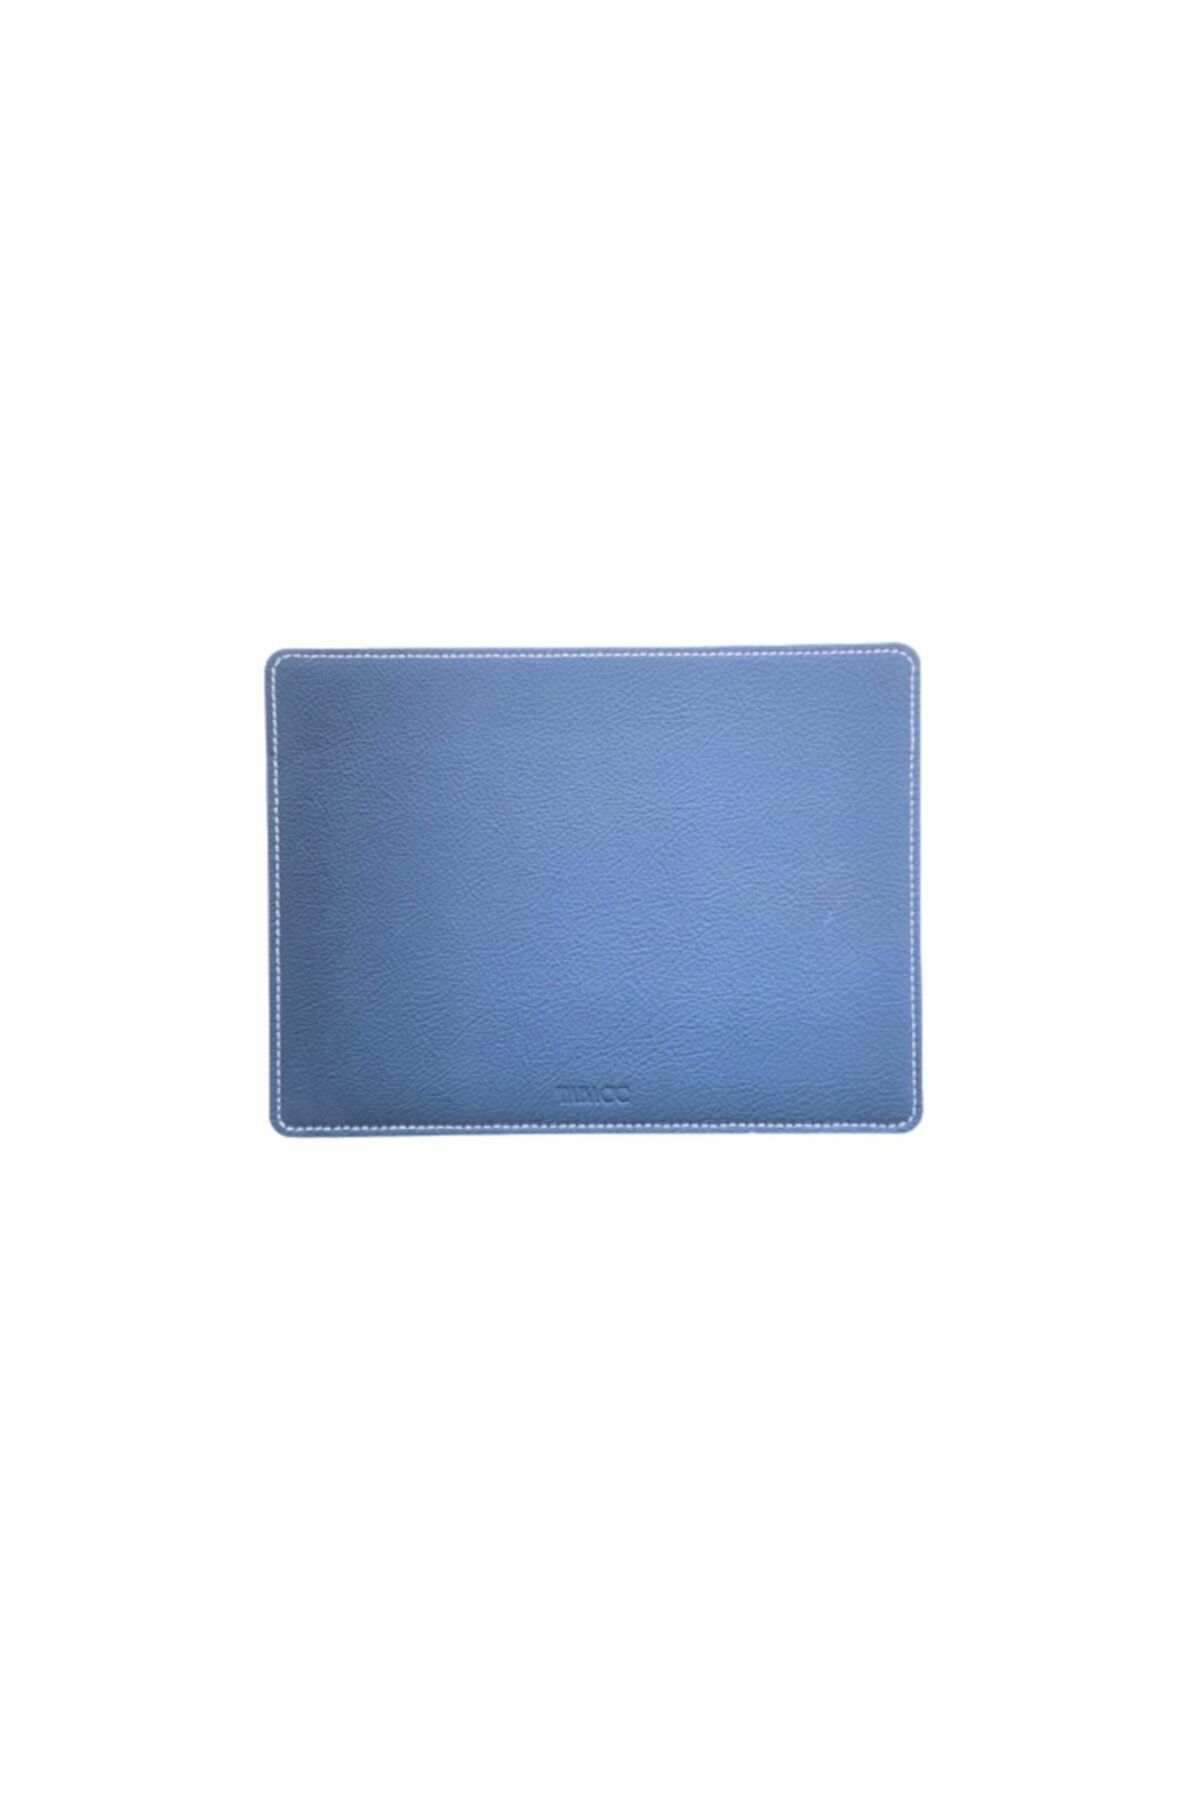 Tabac Deri Bilgisayar Ve Macbook Kılıfı - 15272 - Mavi